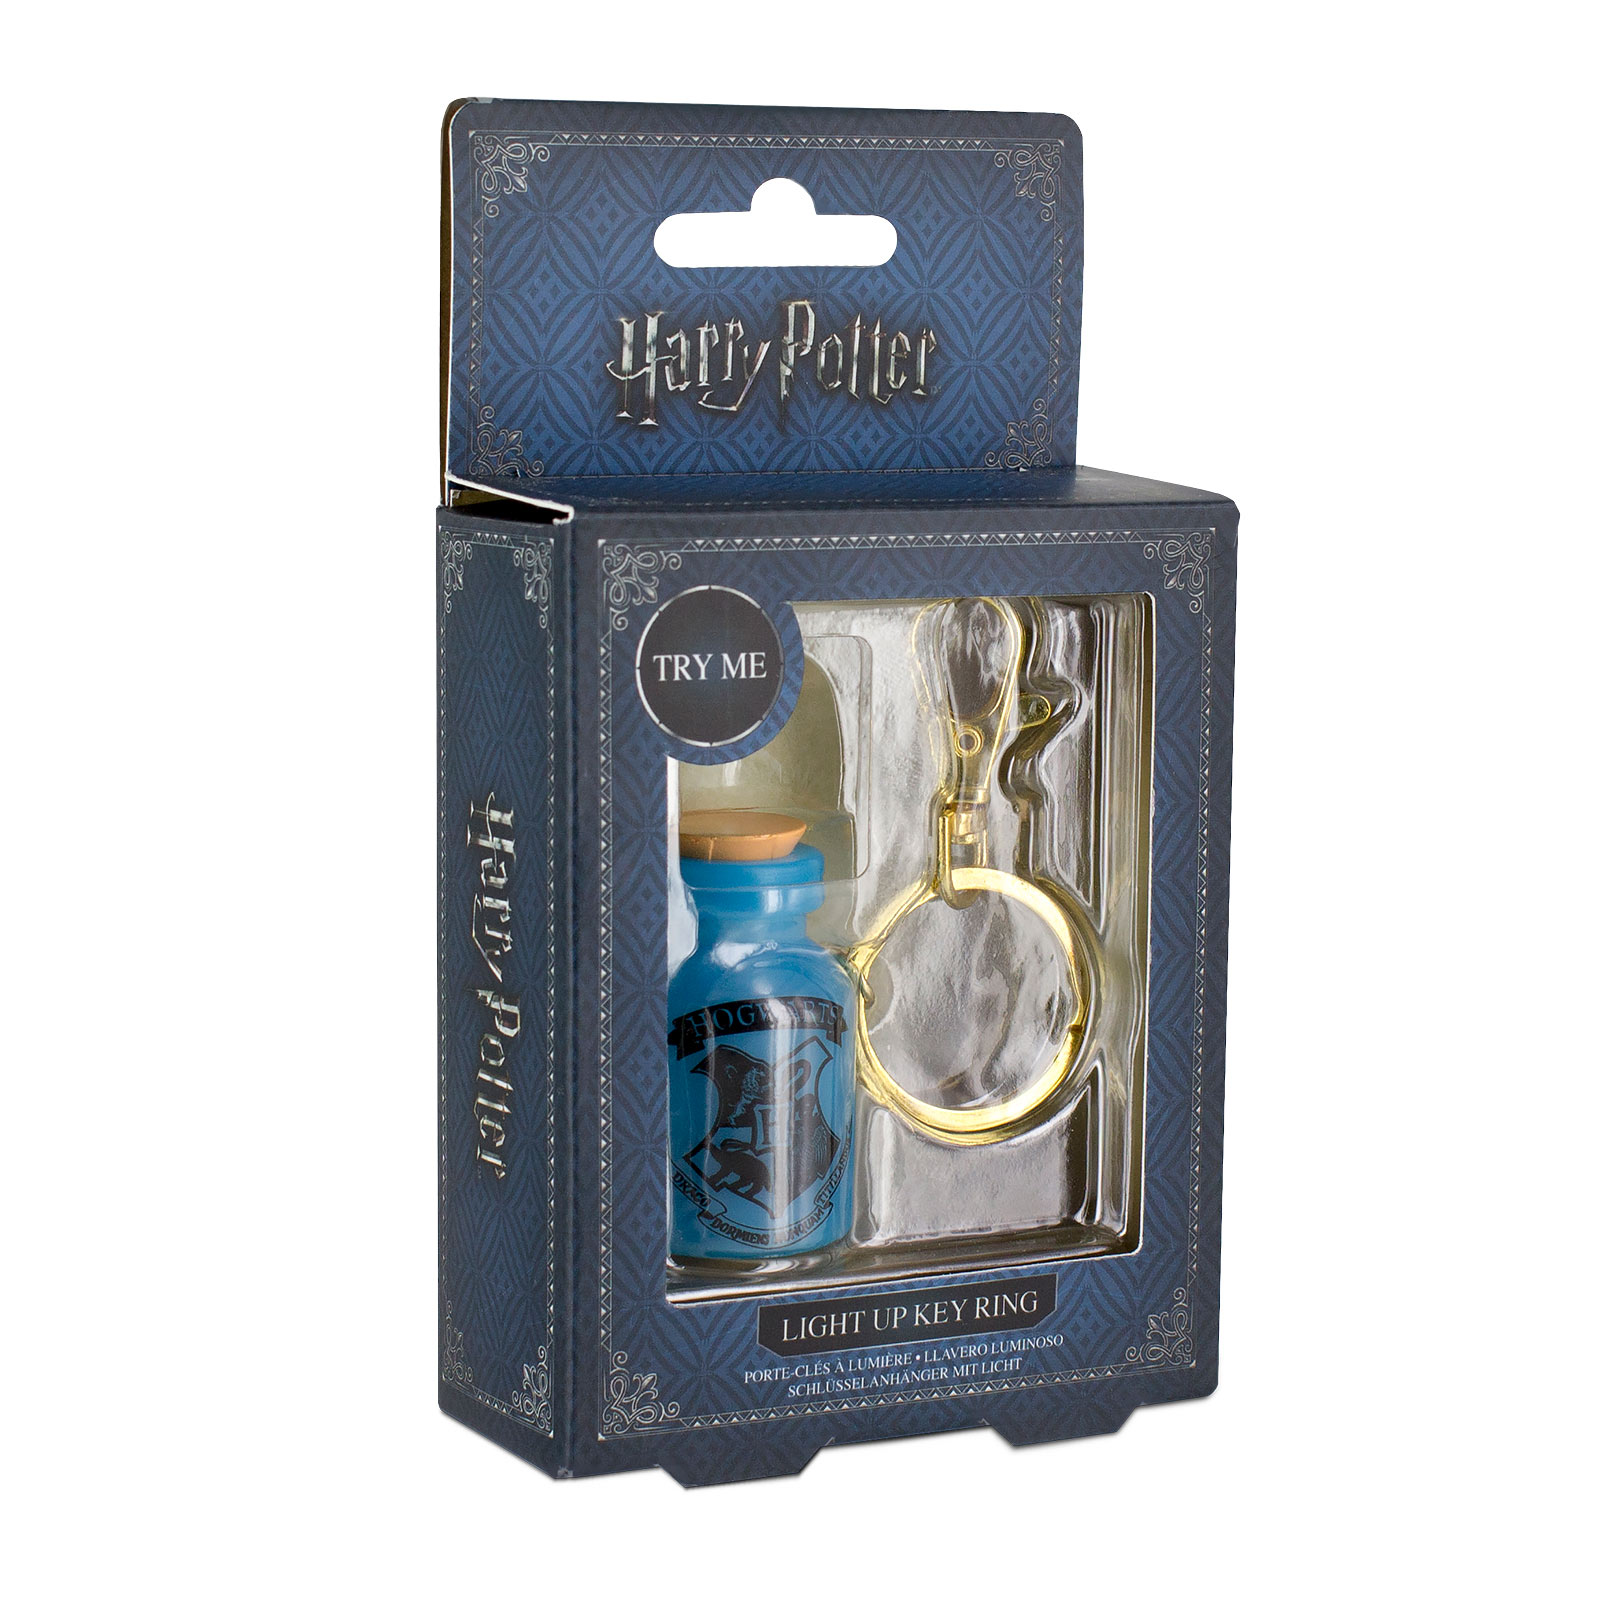 Harry Potter - Porte-clés Potion de Poudlard avec Lumière